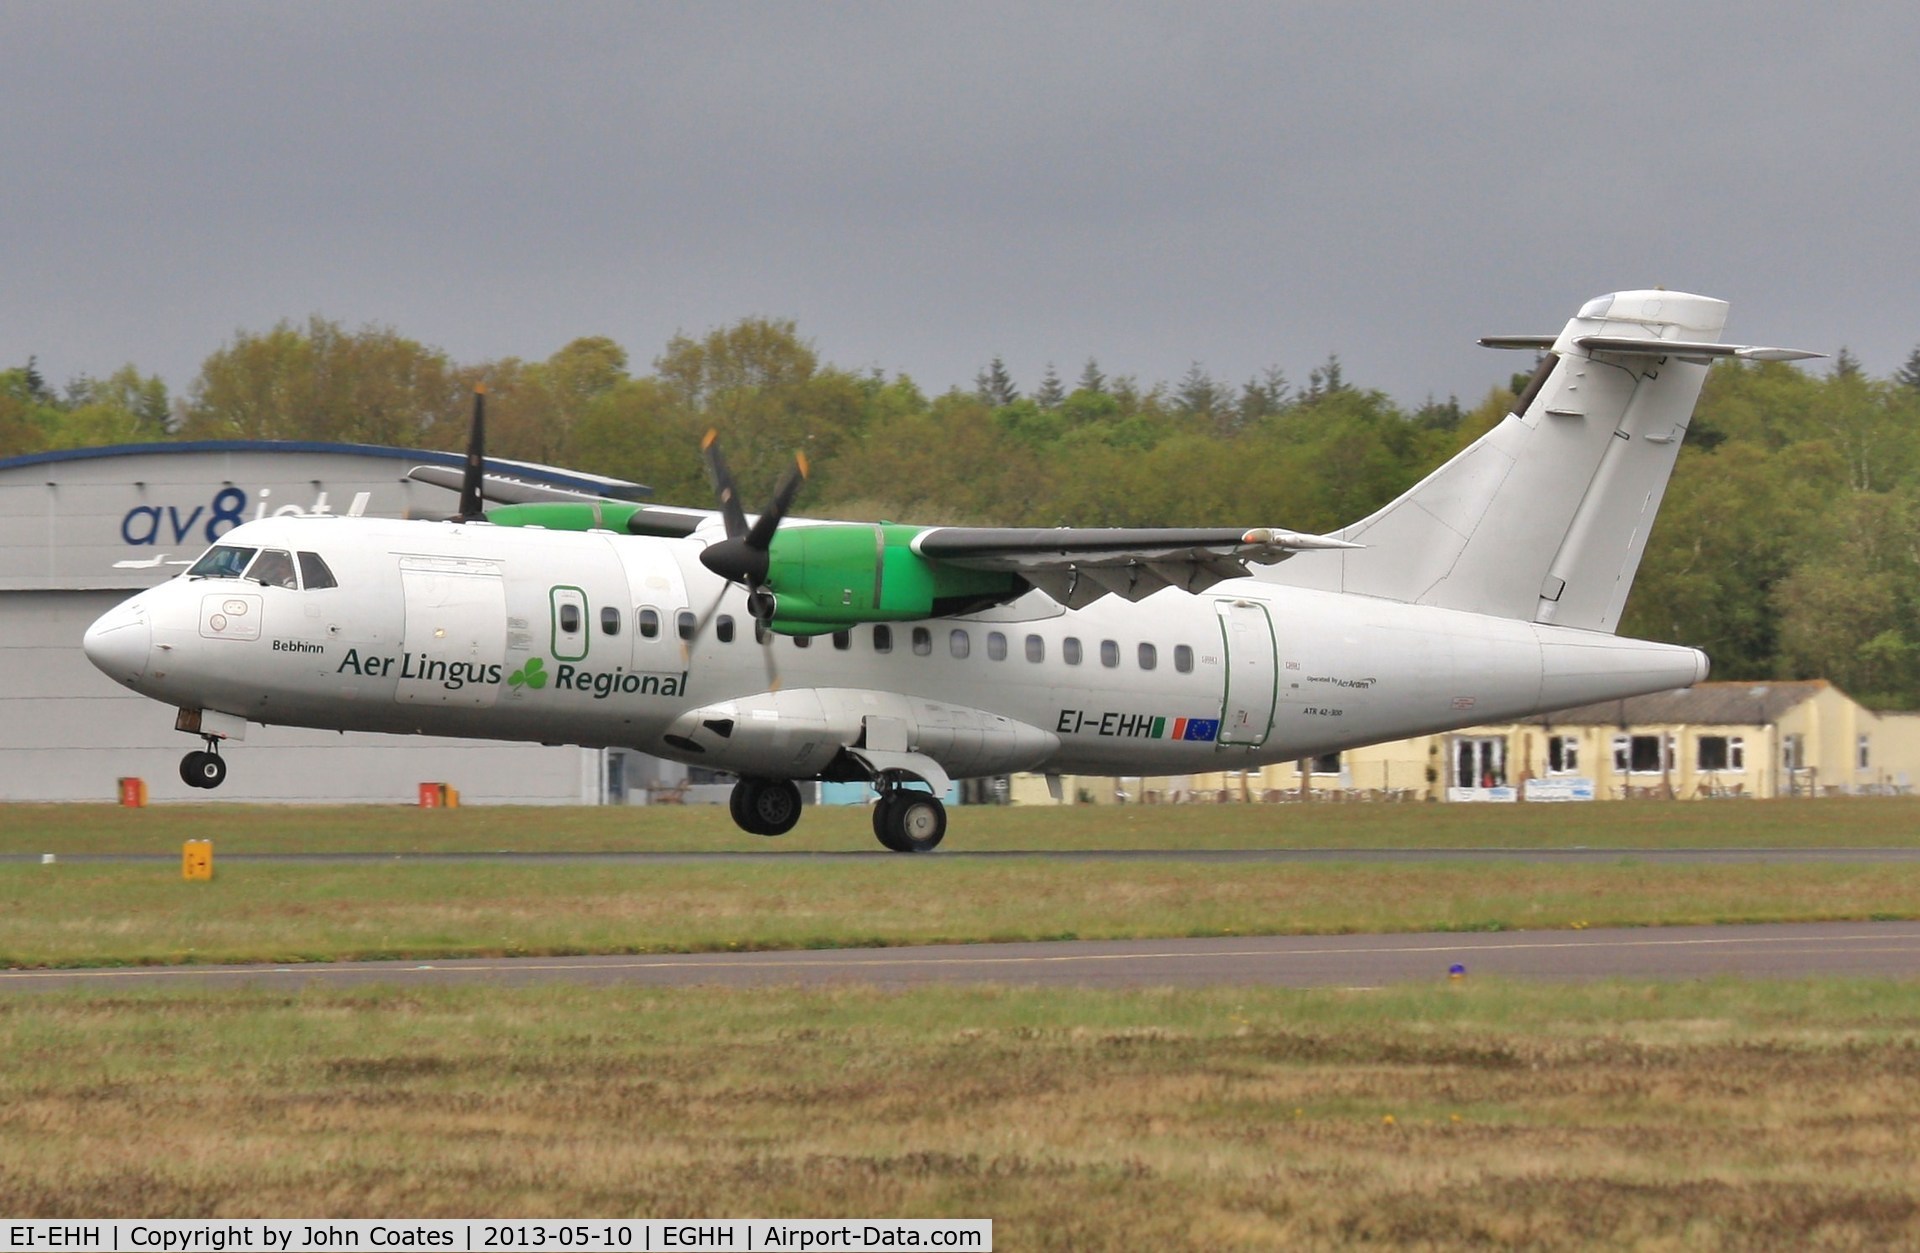 EI-EHH, 1990 ATR 42-300 C/N 196, Touchdown 26 from Dublin